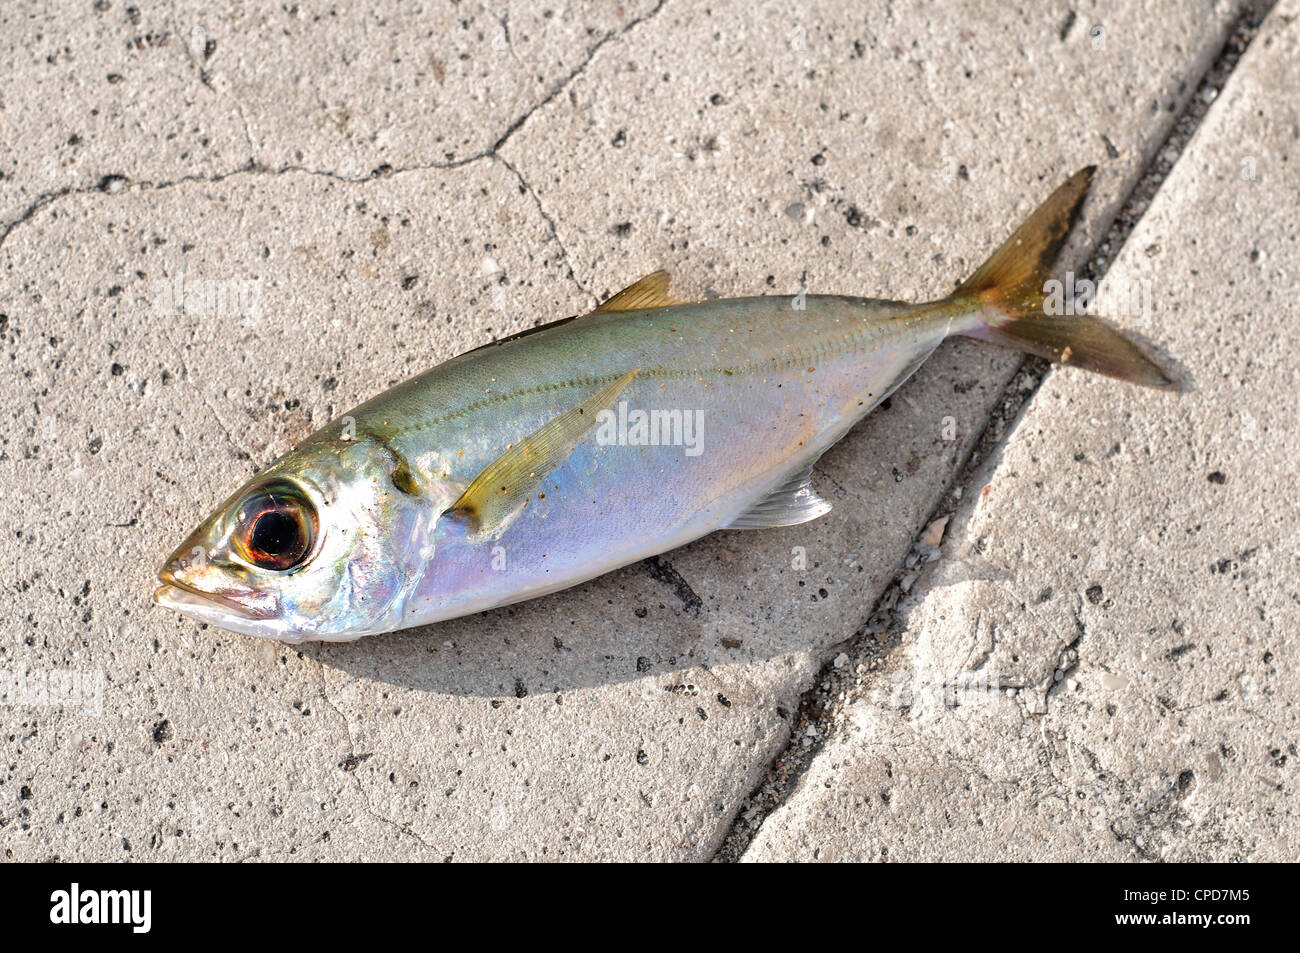 Dead fish - sardine used as bait over asphalt surface Stock Photo - Alamy